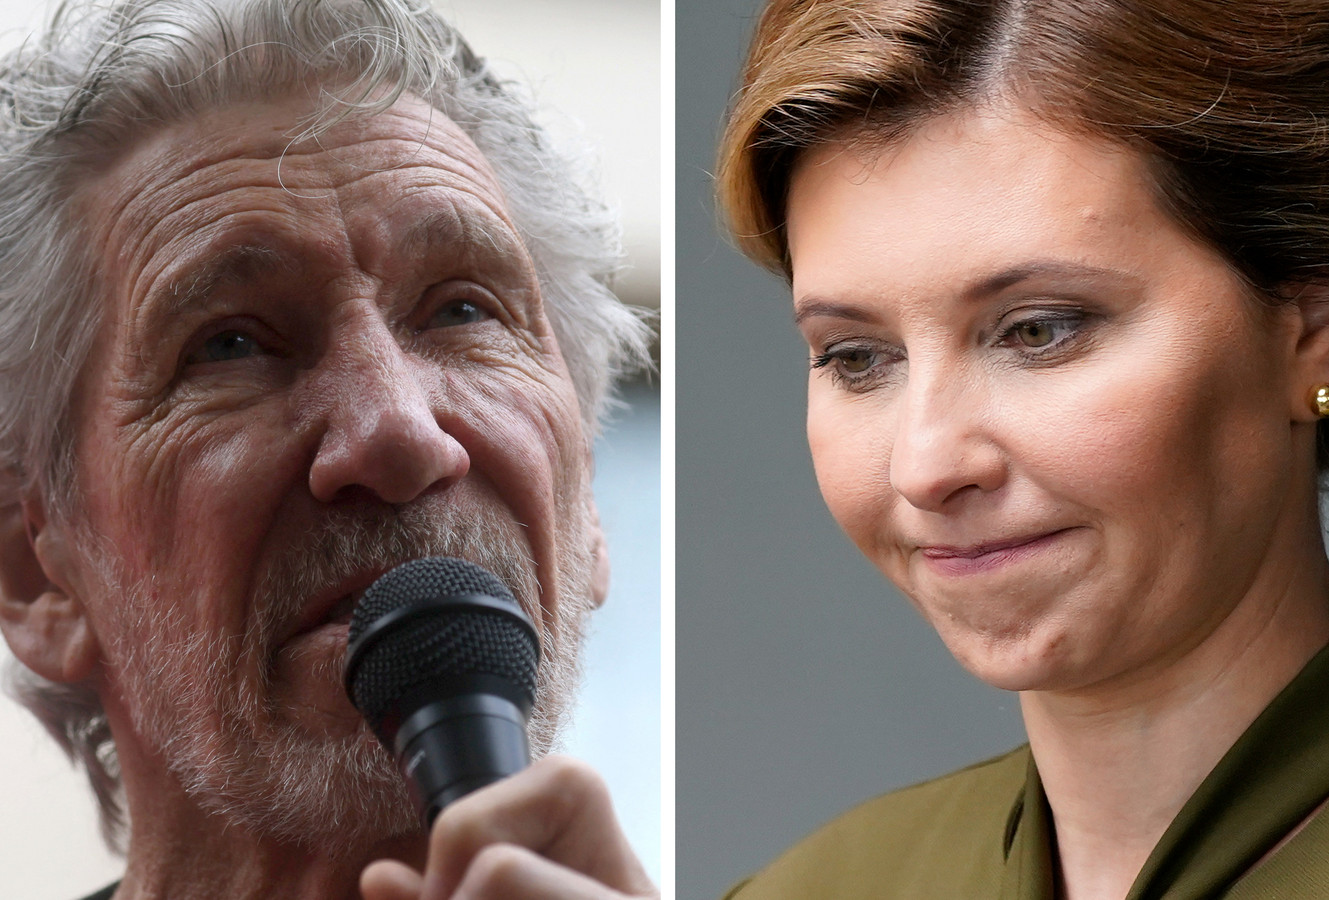 Dans une lettre publiée sur sa page Facebook, Roger Waters s'est adressée à la Première dame ukrainienne. Il lui demande de raisonner son mari, le président Zelensky.